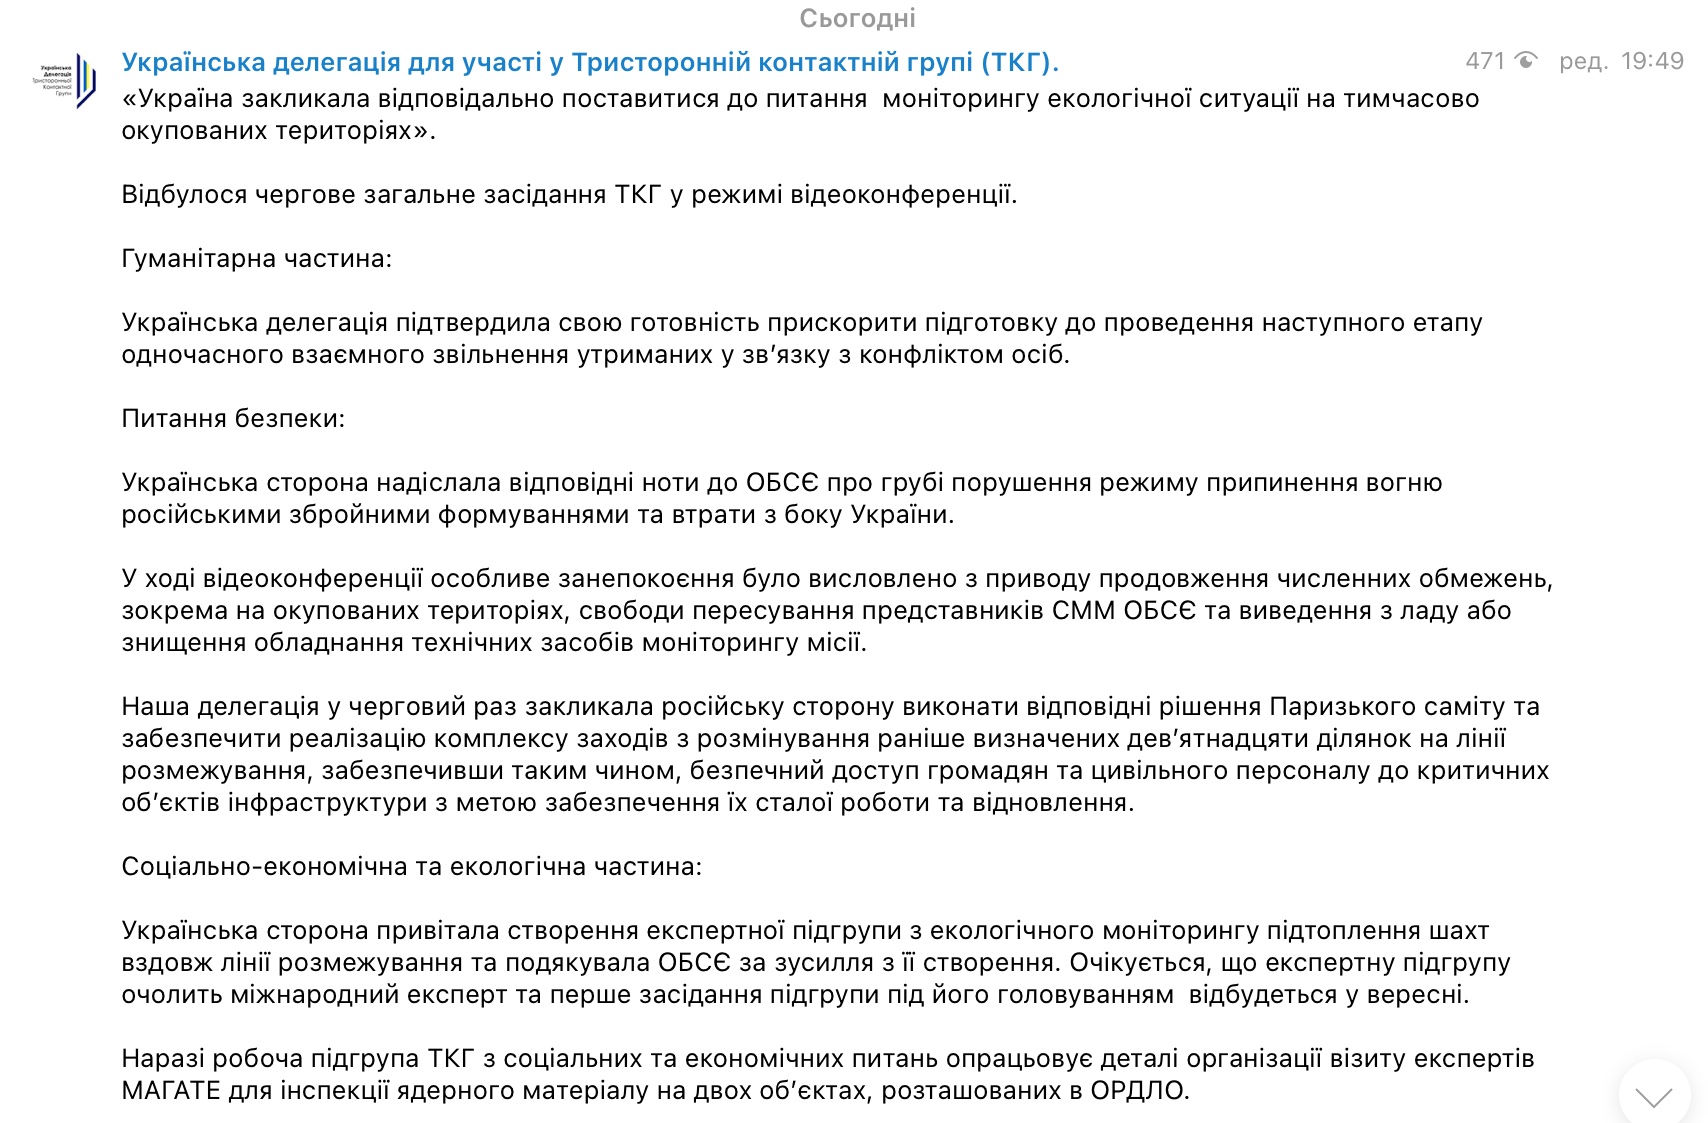 Ядерний матеріал на Донбасі. Почалася підготовка візиту експертів МАГАТЕ